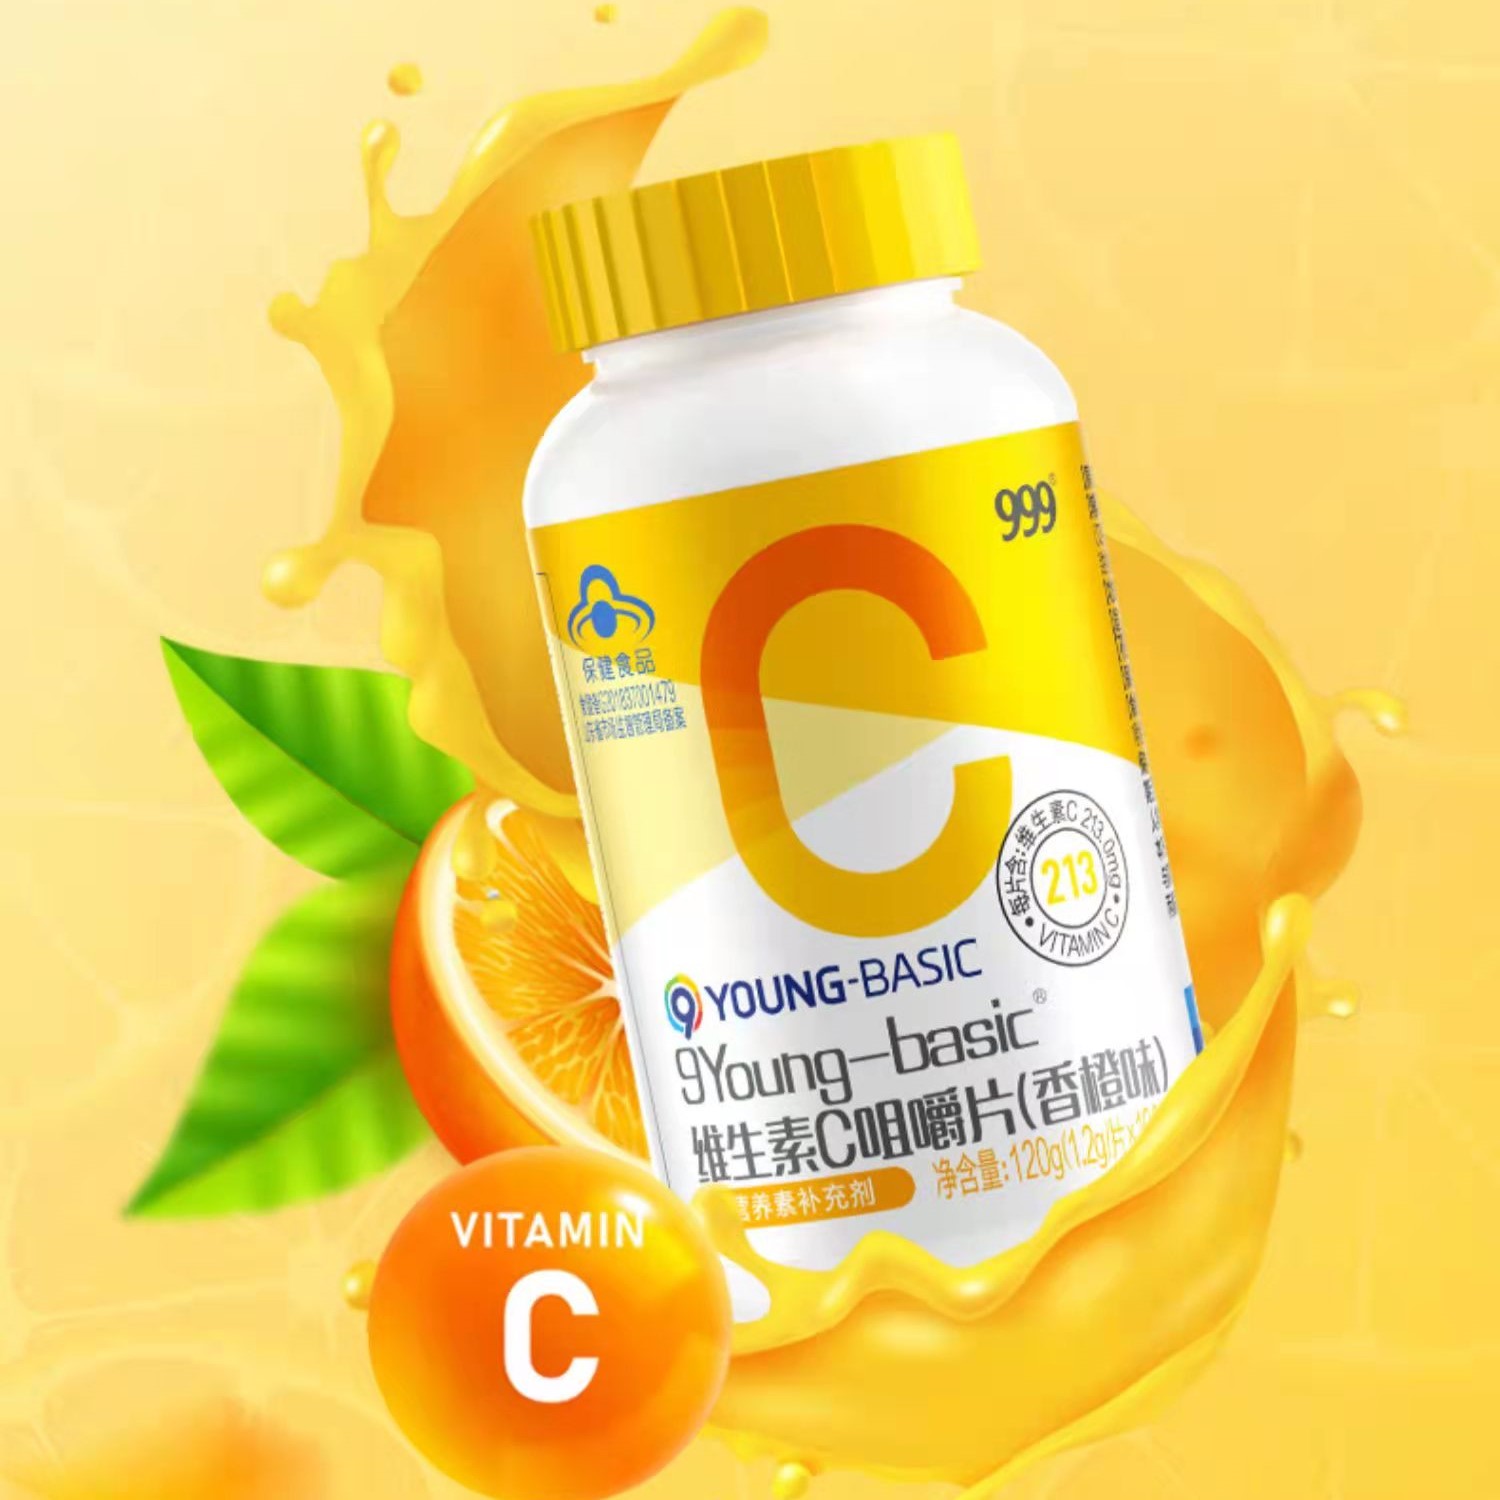 999品牌-9Young-basic维生素C咀嚼片(香橙味)